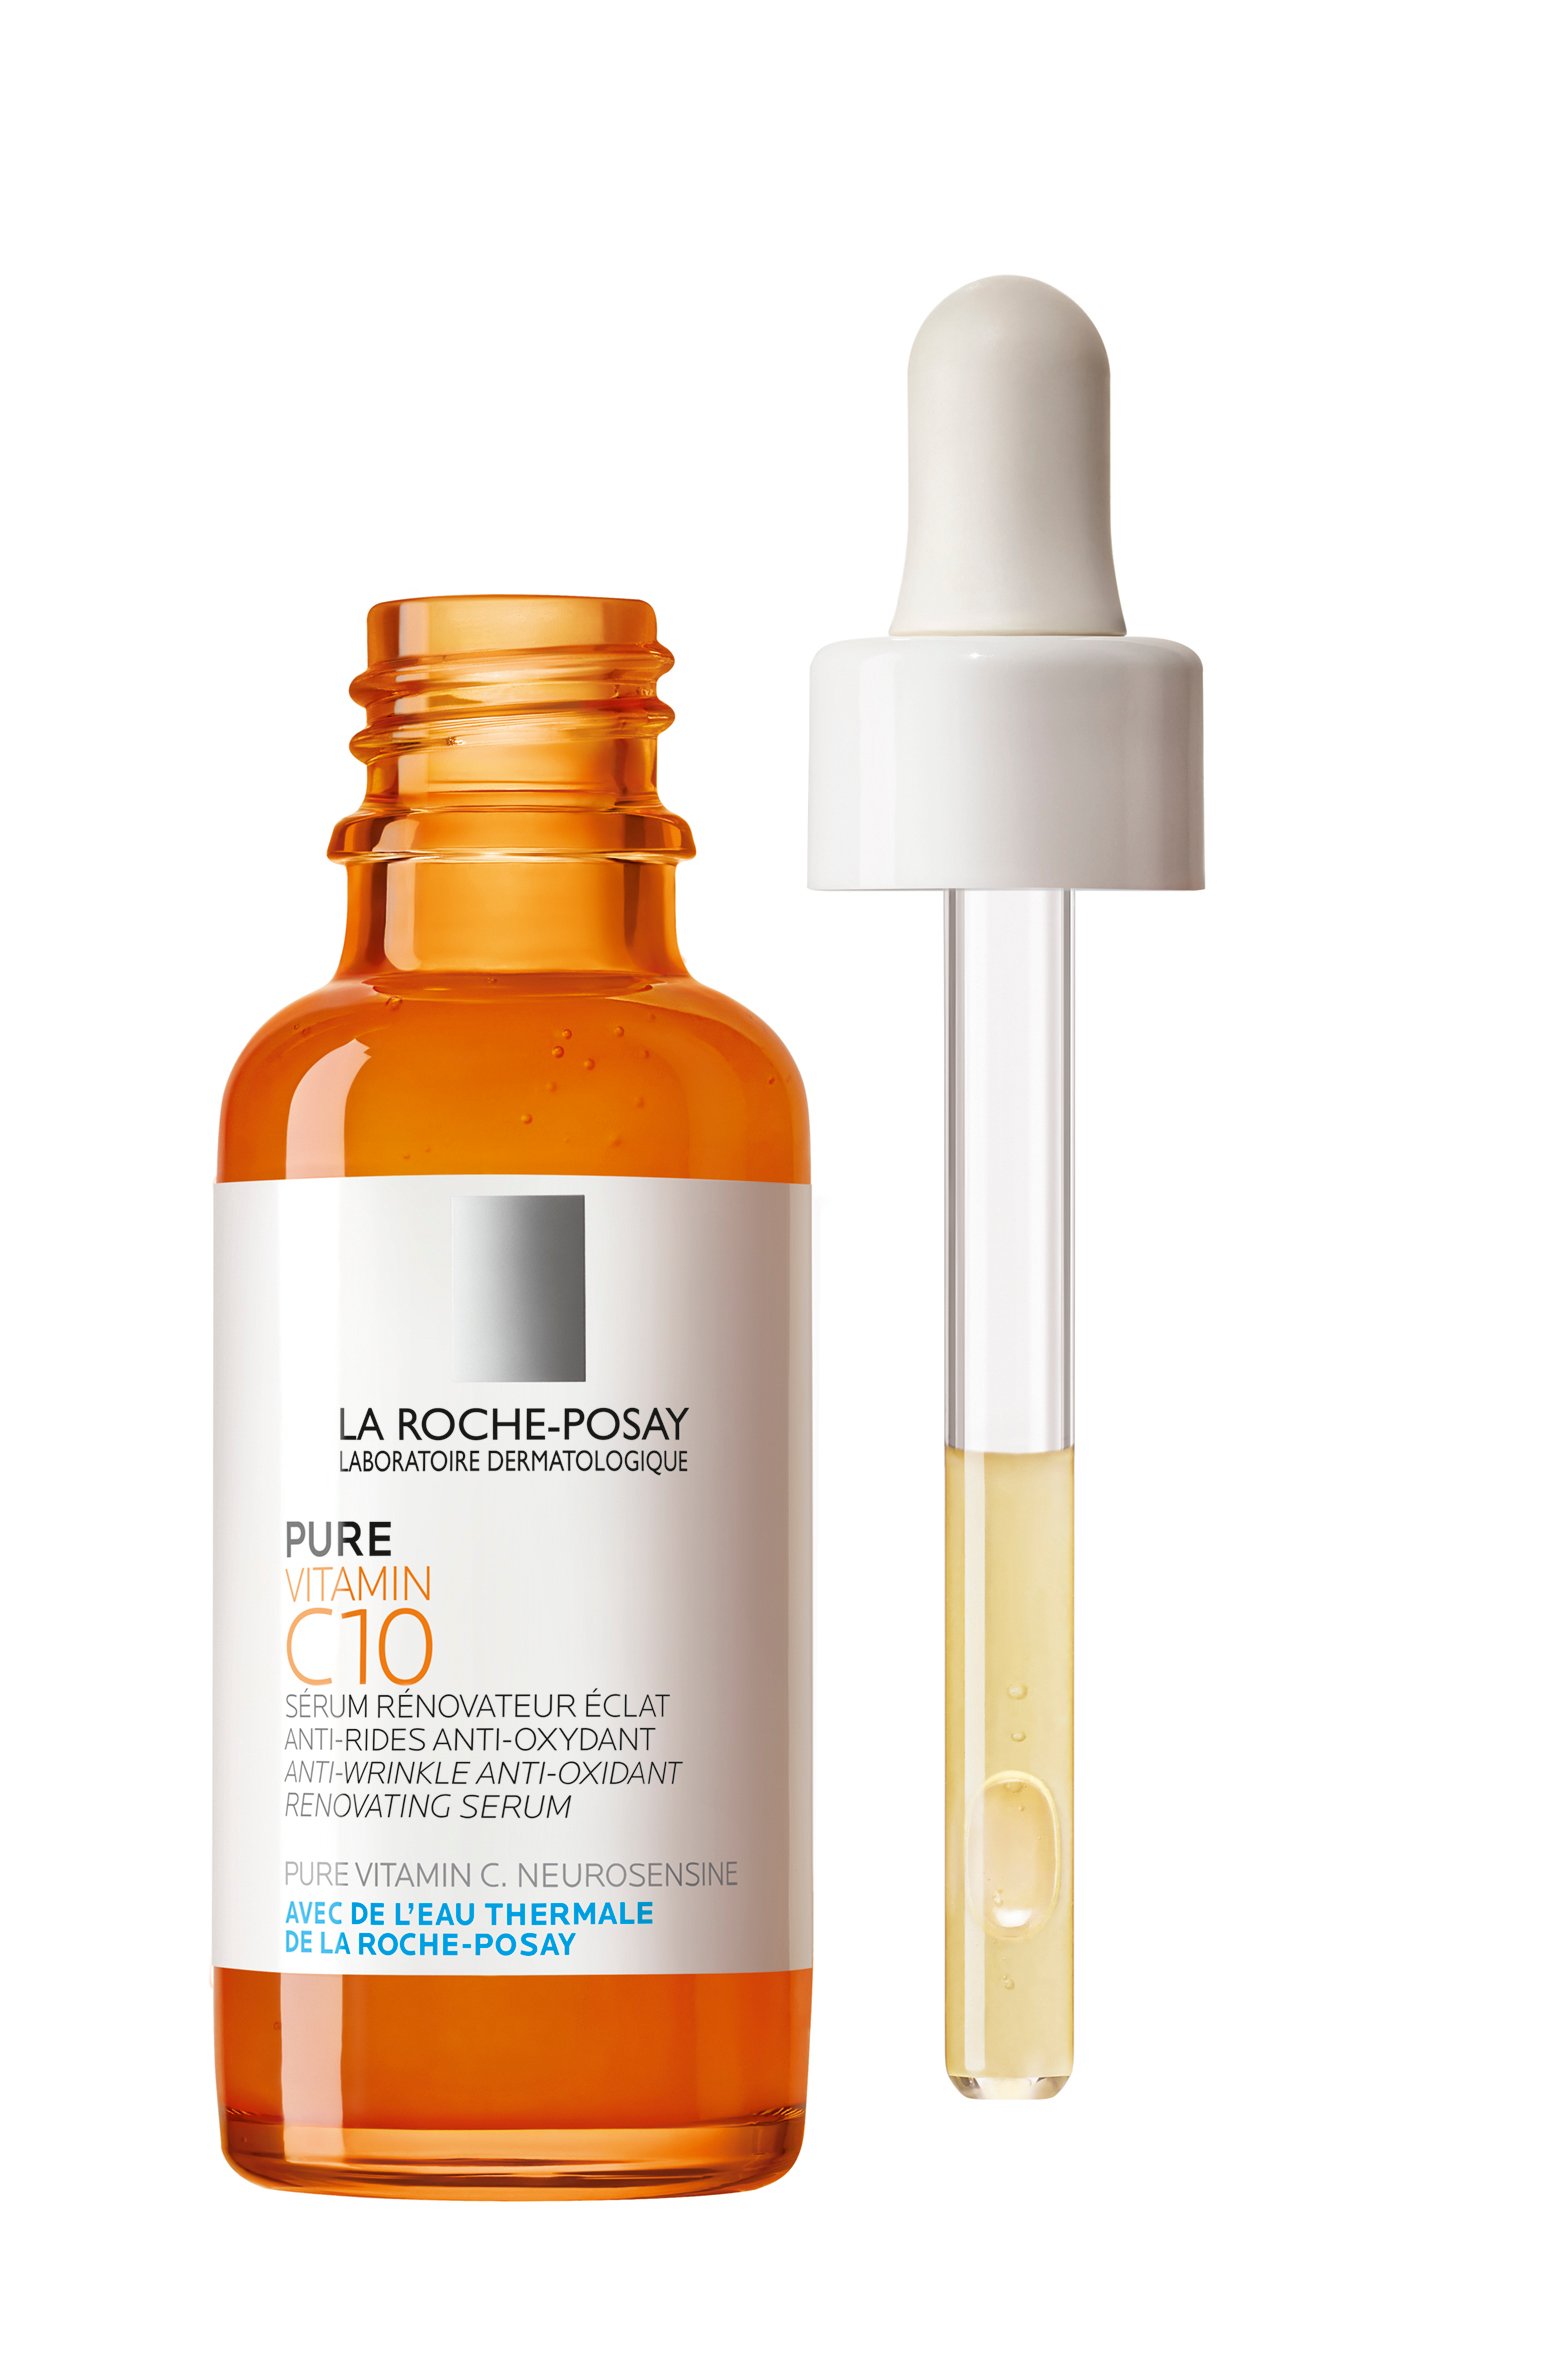 Сироватка-антиоксидант із вітаміном С проти зморшок La Roche-Posay Pure Vitamin C10, для оновлення шкіри обличчя, 30 мл - фото 3